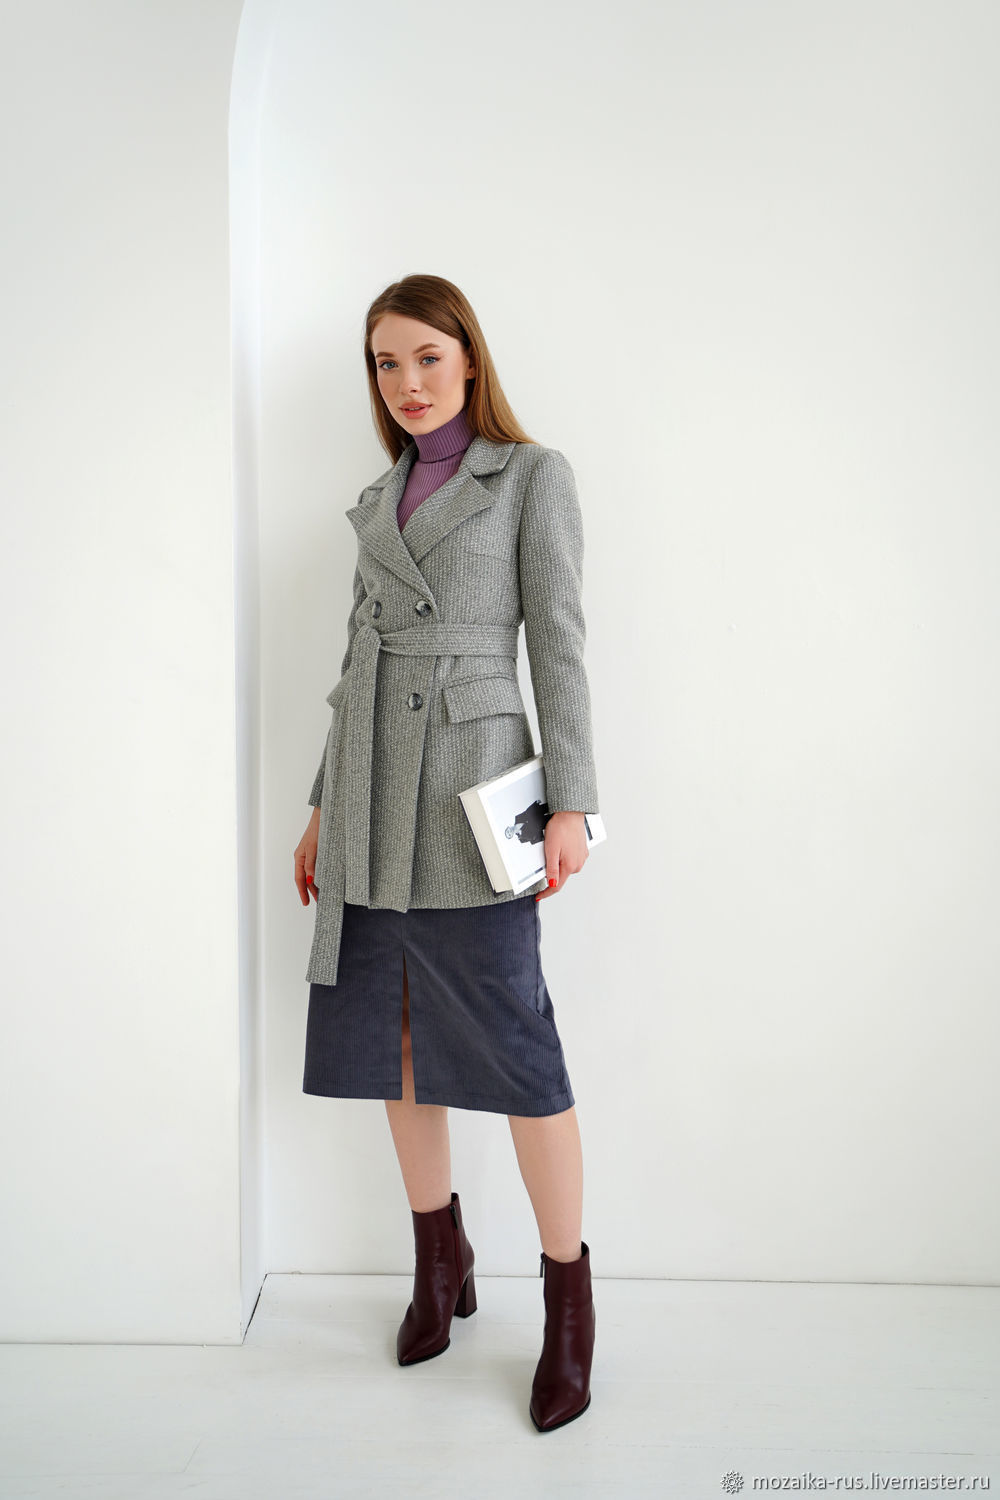 Coat jacket wool Gray striped, short demi coat, Coats, Novosibirsk,  Фото №1